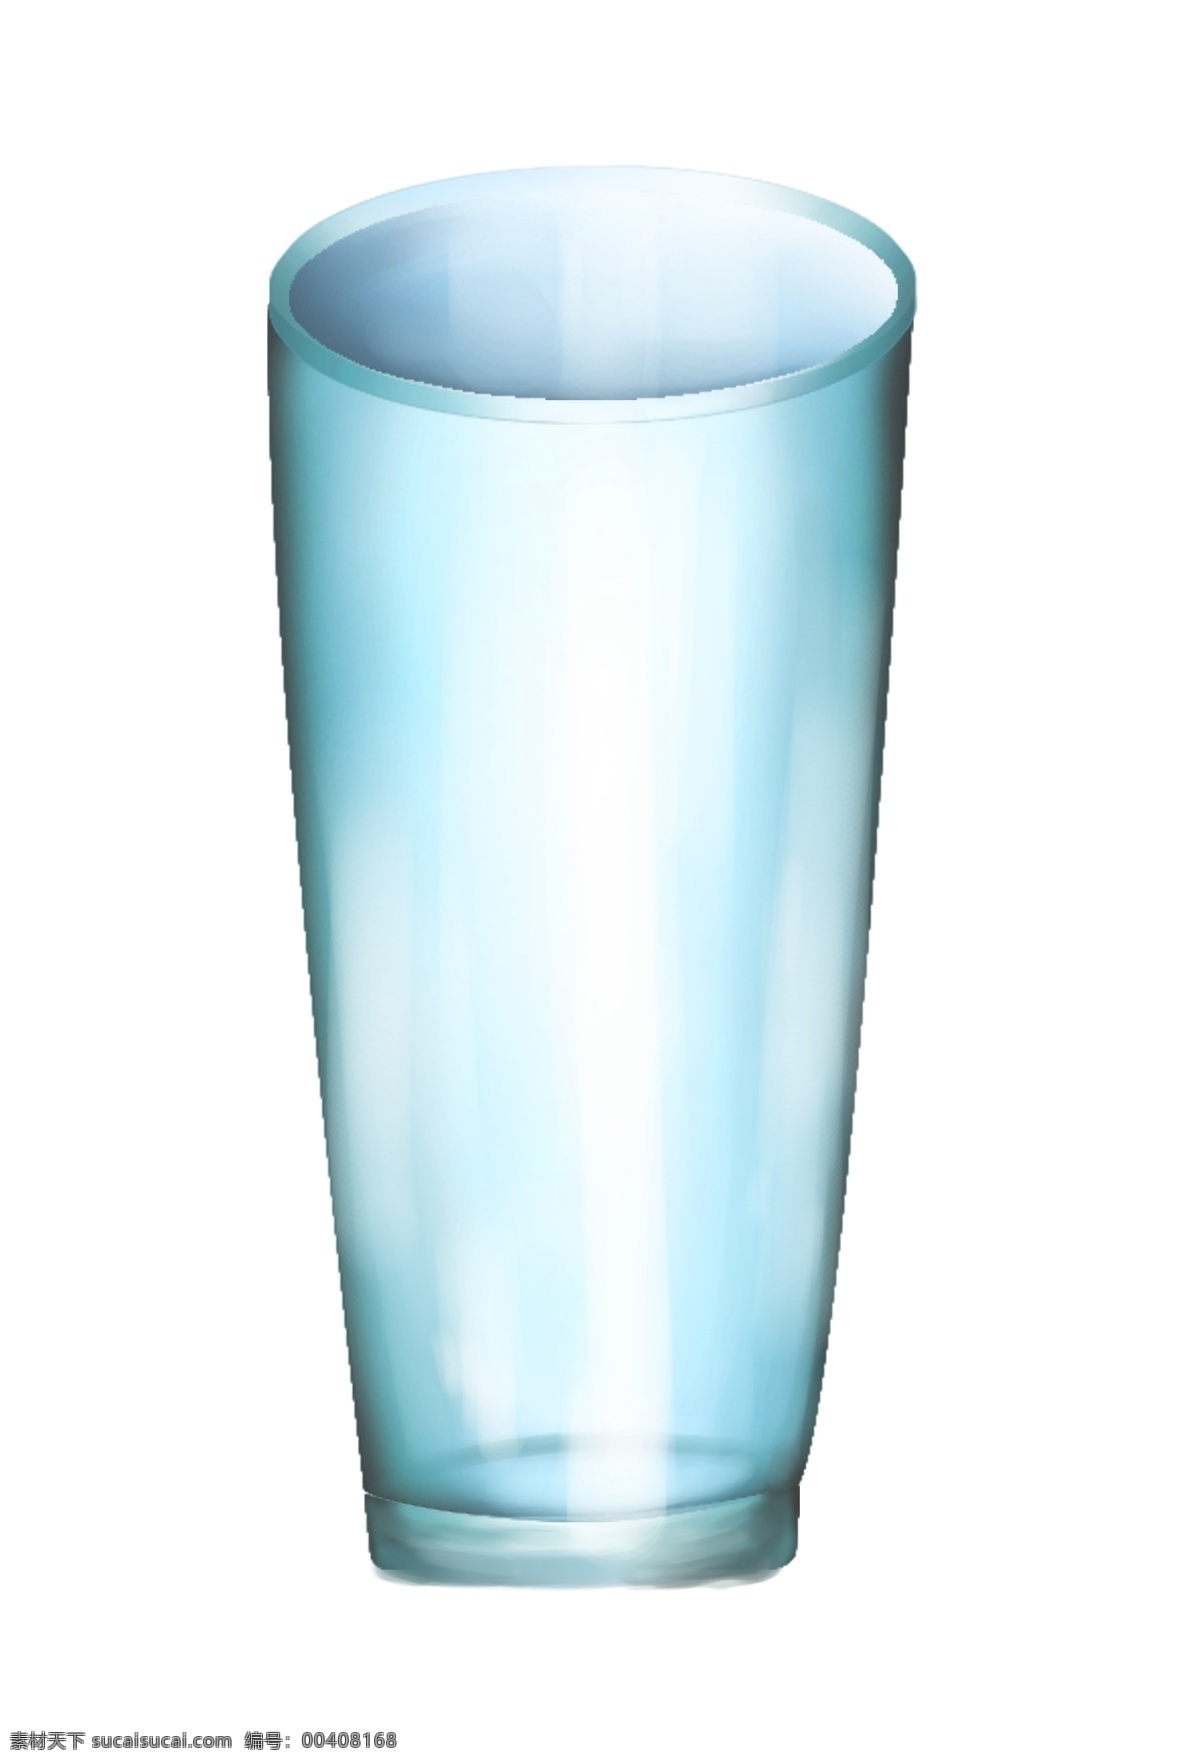 蓝色 玻璃 杯子 容器 玻璃容器 蓝色瓶子 玻璃瓶子 瓶子插图 蓝色玻璃瓶子 精美 瓶子